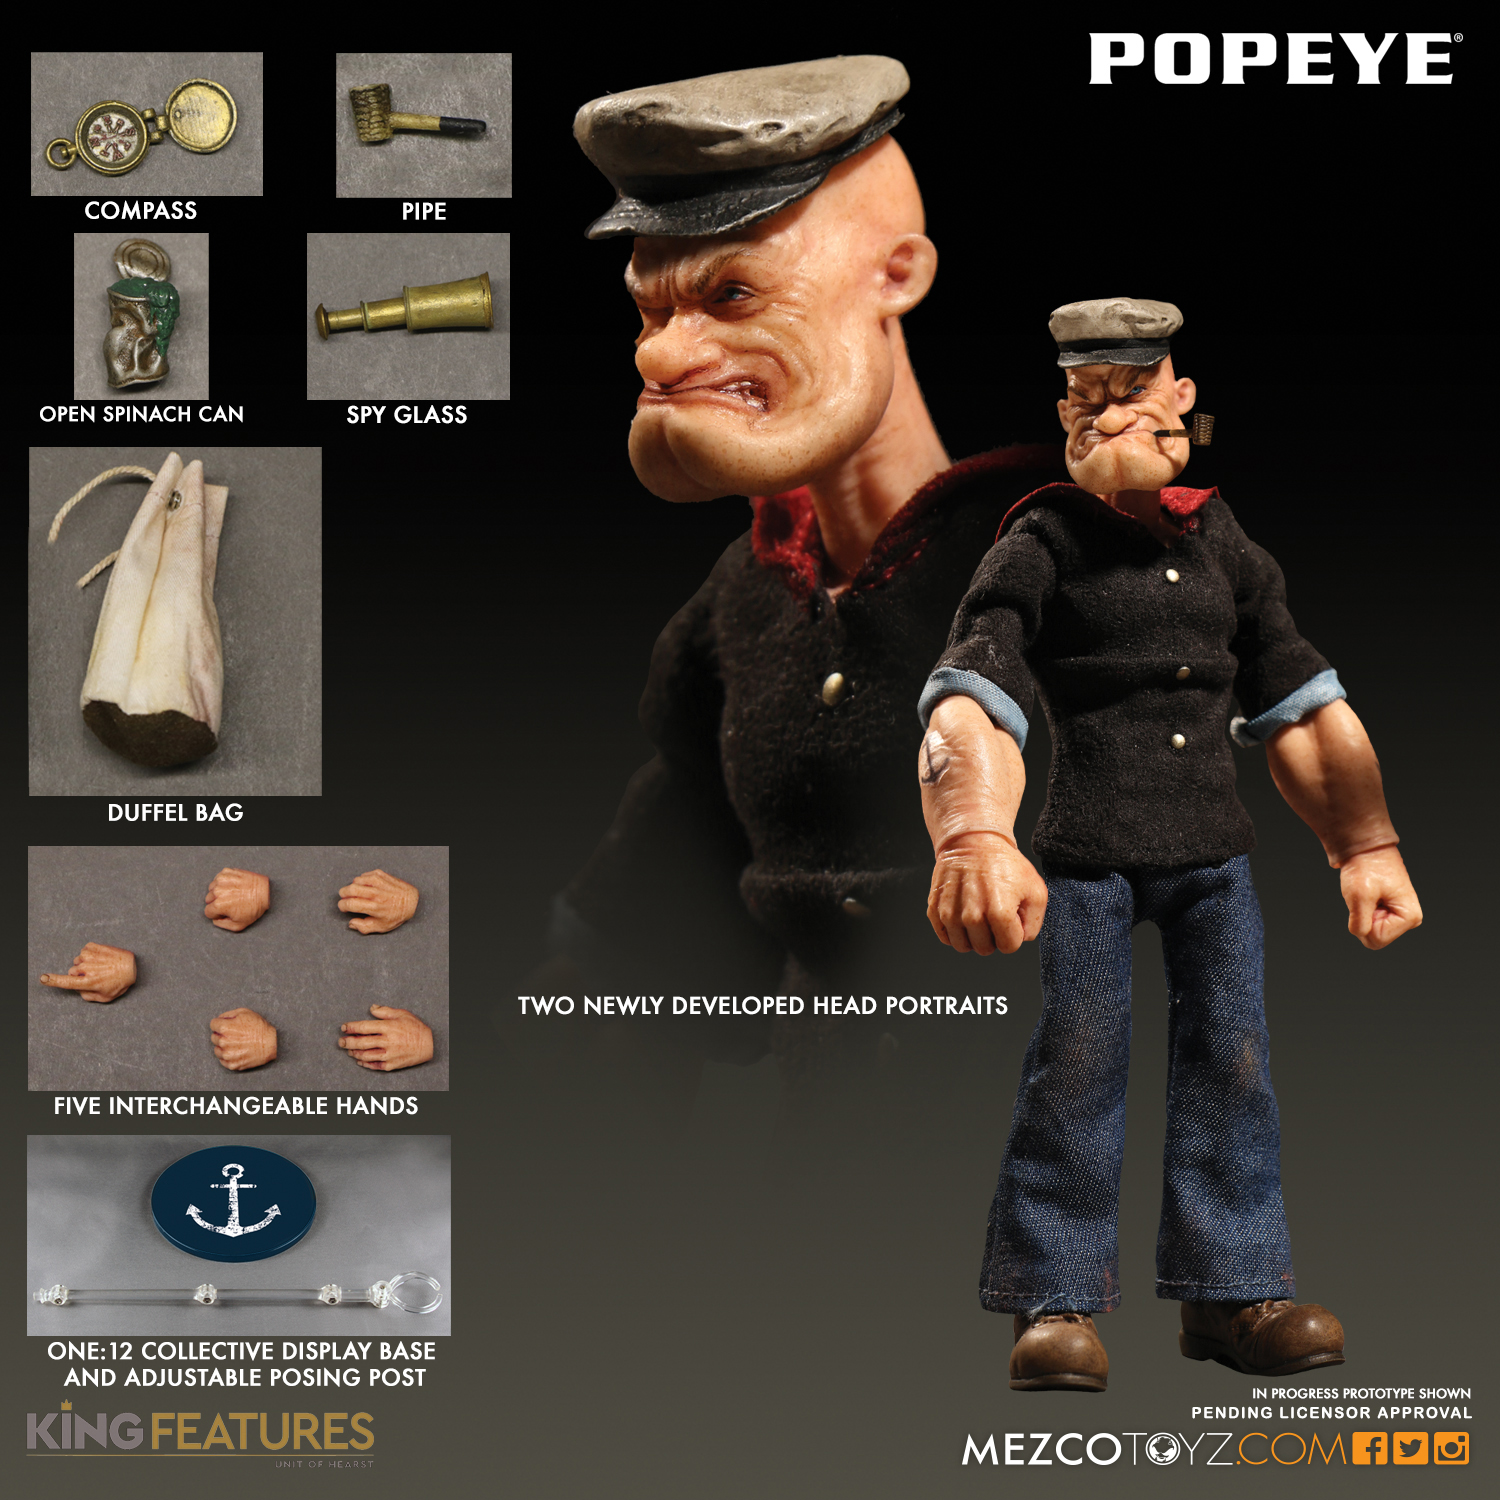 Mezco2017_One12-Popeye.jpg